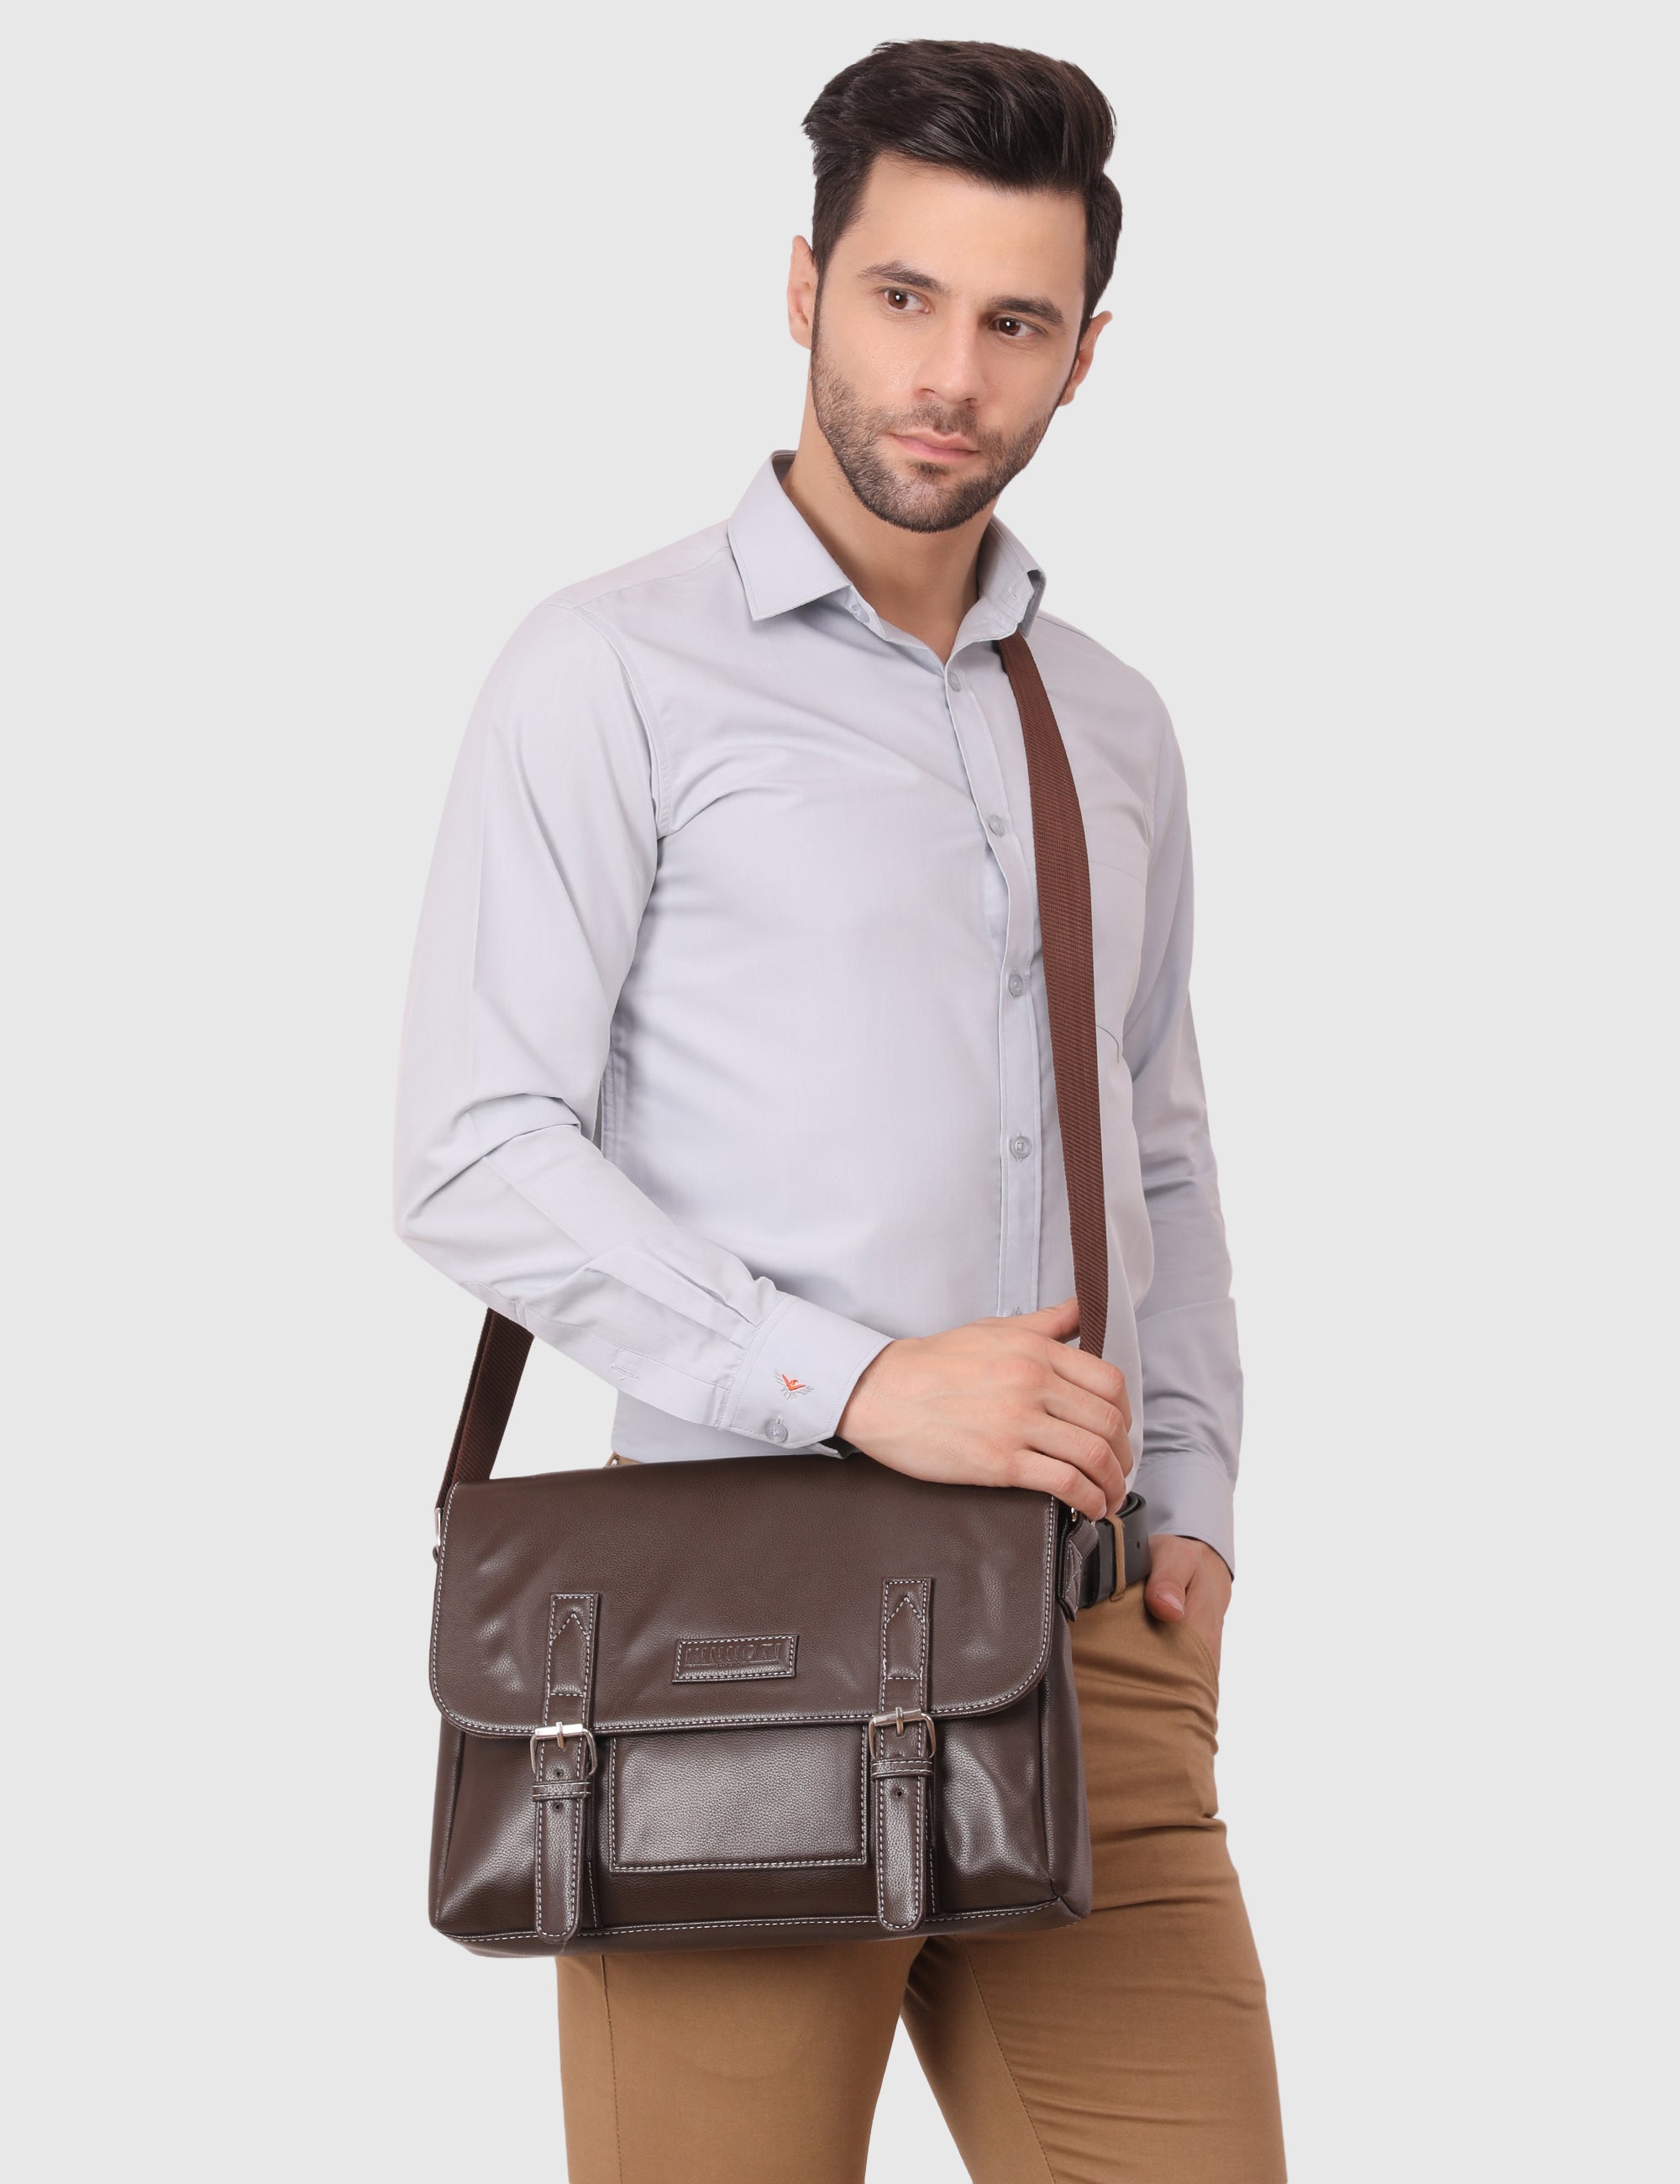 Brown Men's Vegan Leather Messenger Bag with Adjustable Shoulder Strap